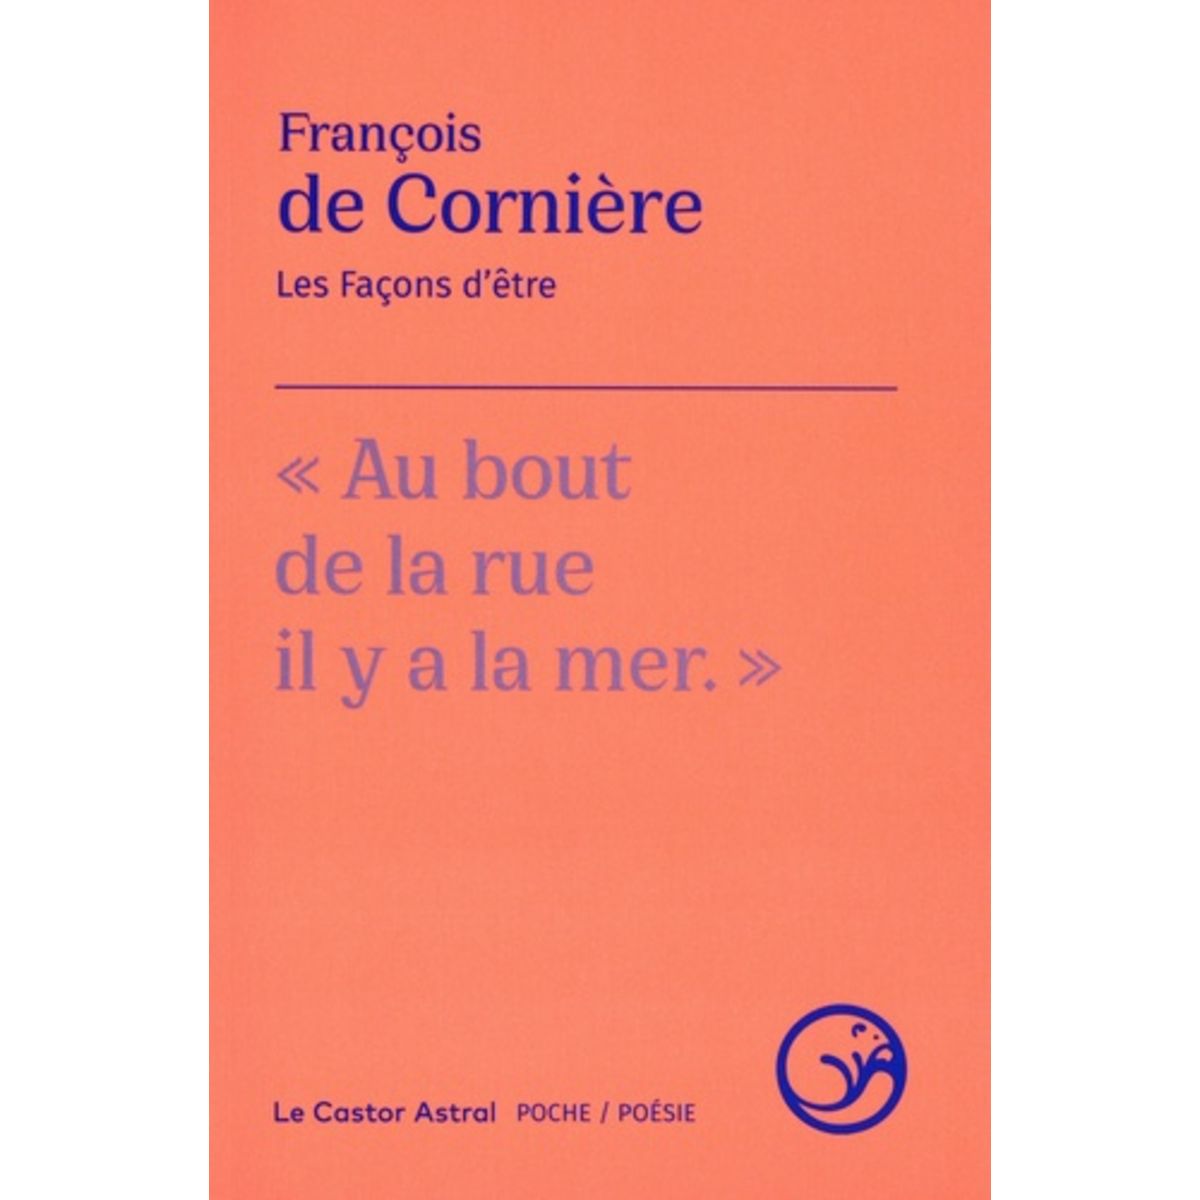  LES FACONS D'ETRE, Cornière François de